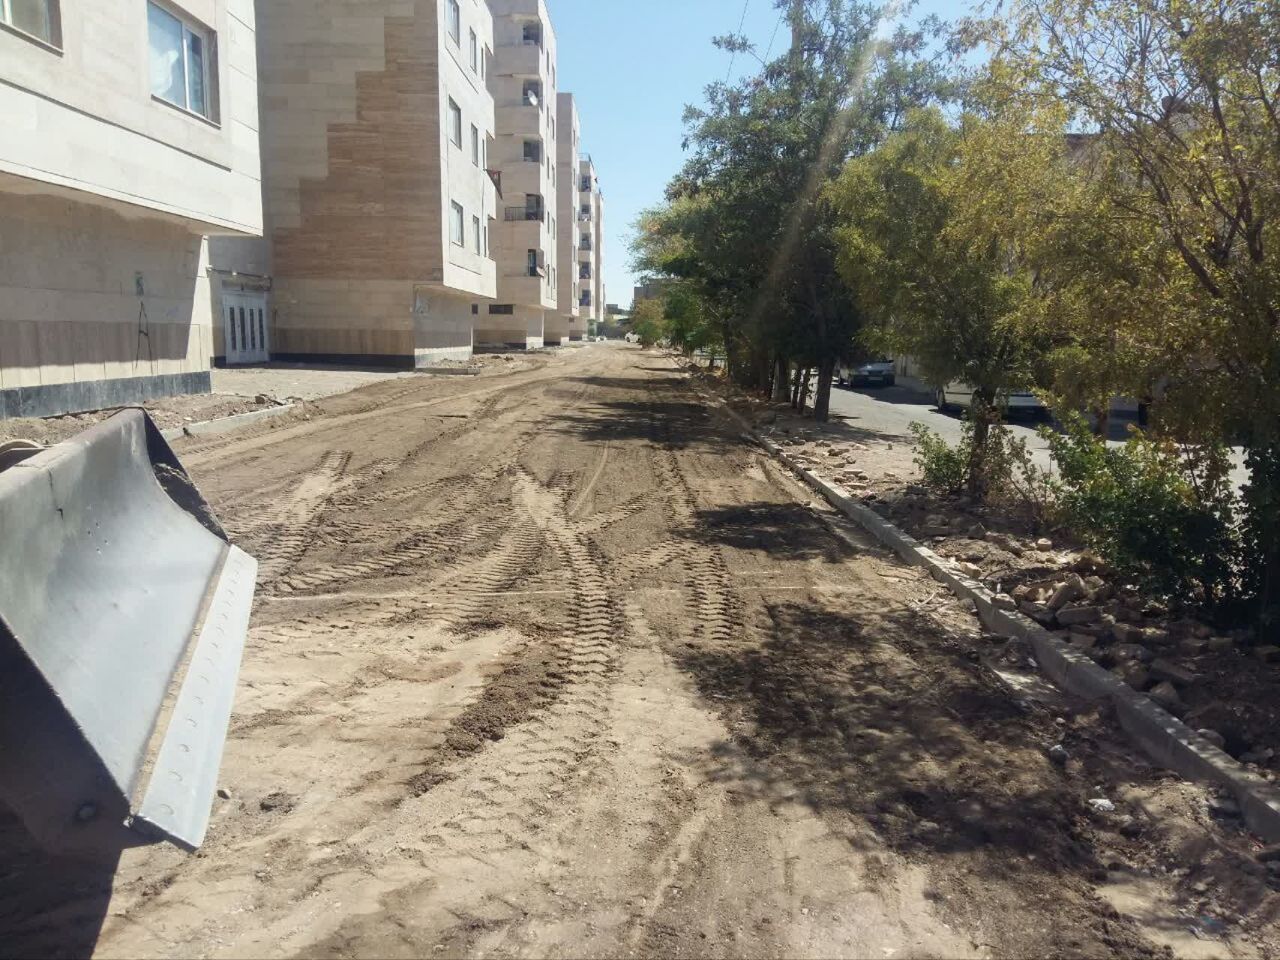 اجرای عملیات زیر سازی کوچه های مسکن مهر فرهنگیان توحید شهر